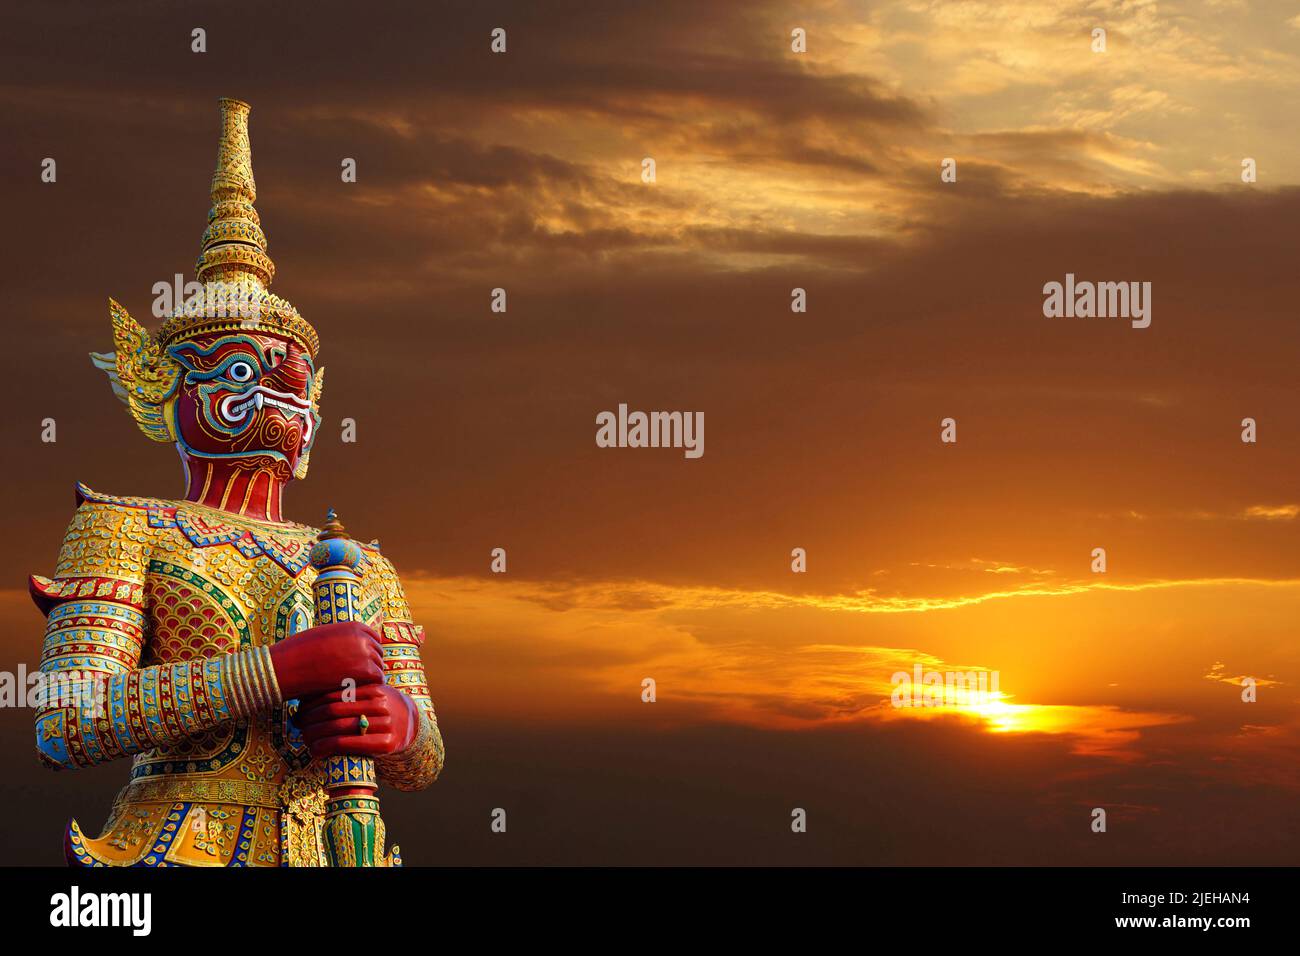 Yak, Yaksa, Teppanom, Tempelwaechter in Thailand, Stock Photo